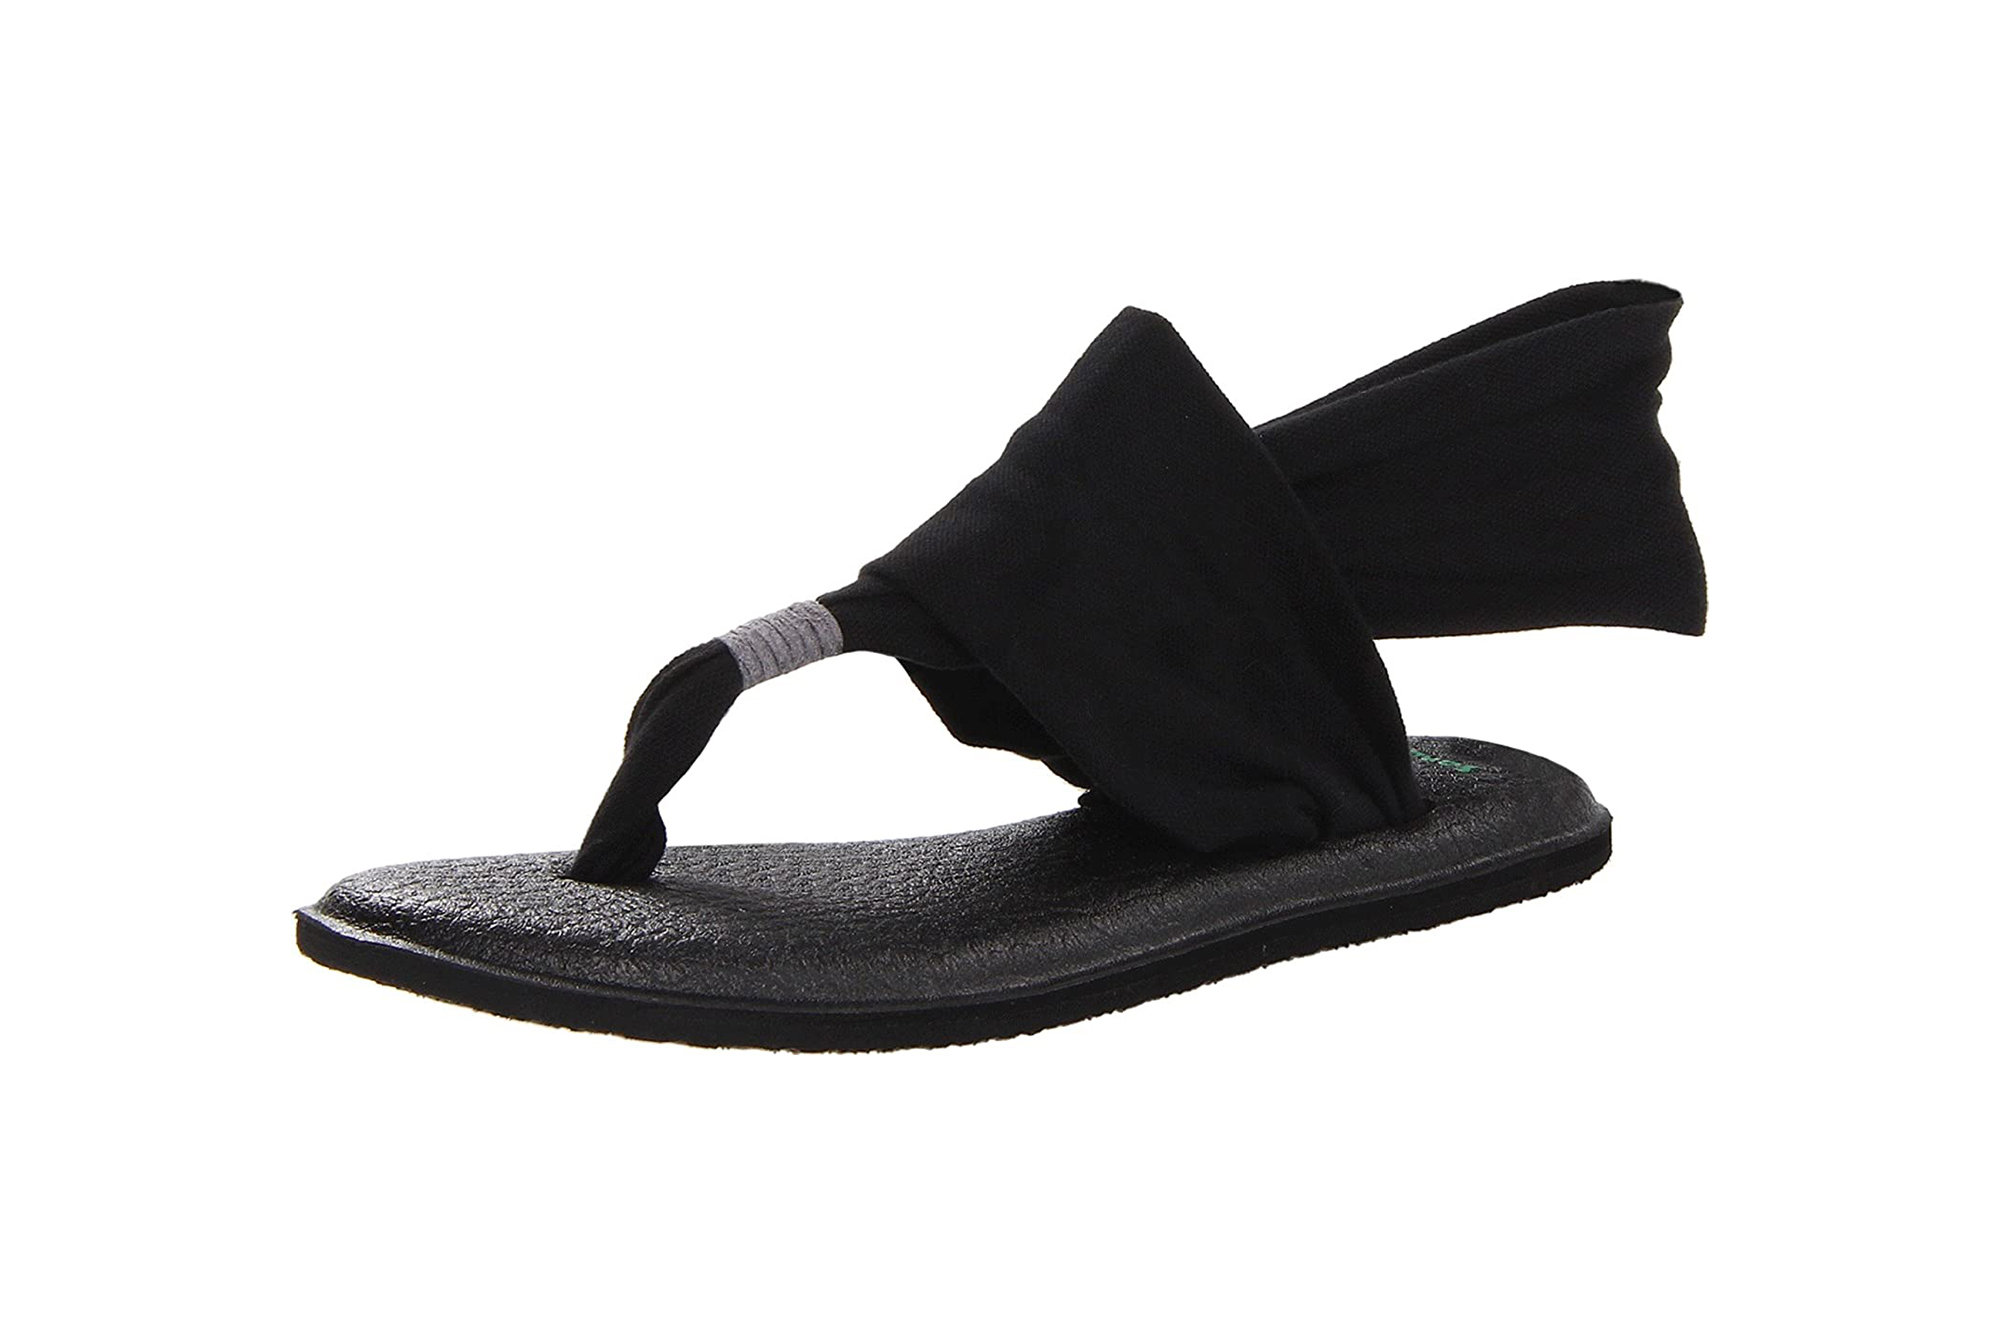 Buy Sanuk Women's Yoga Sling Sandal, Black, 8 M US at